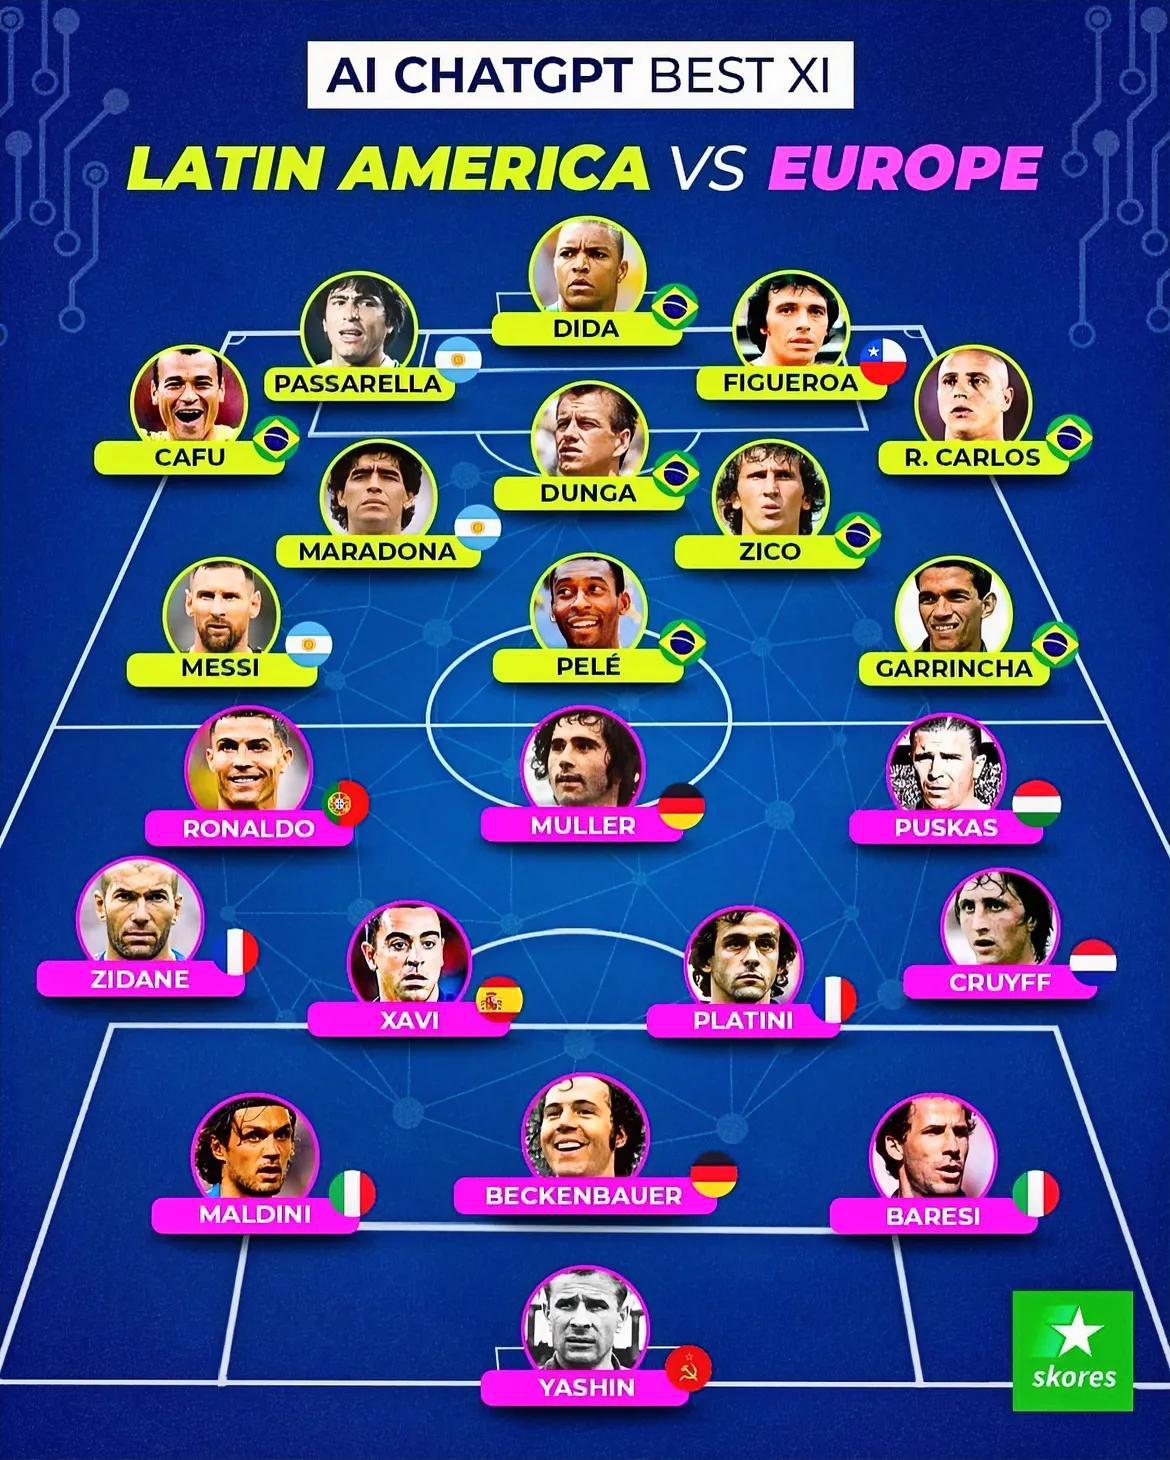 AI智能评欧洲&美洲历史最佳阵容

美洲
门将：迪达
后卫：卡福、帕萨雷拉、菲格(1)